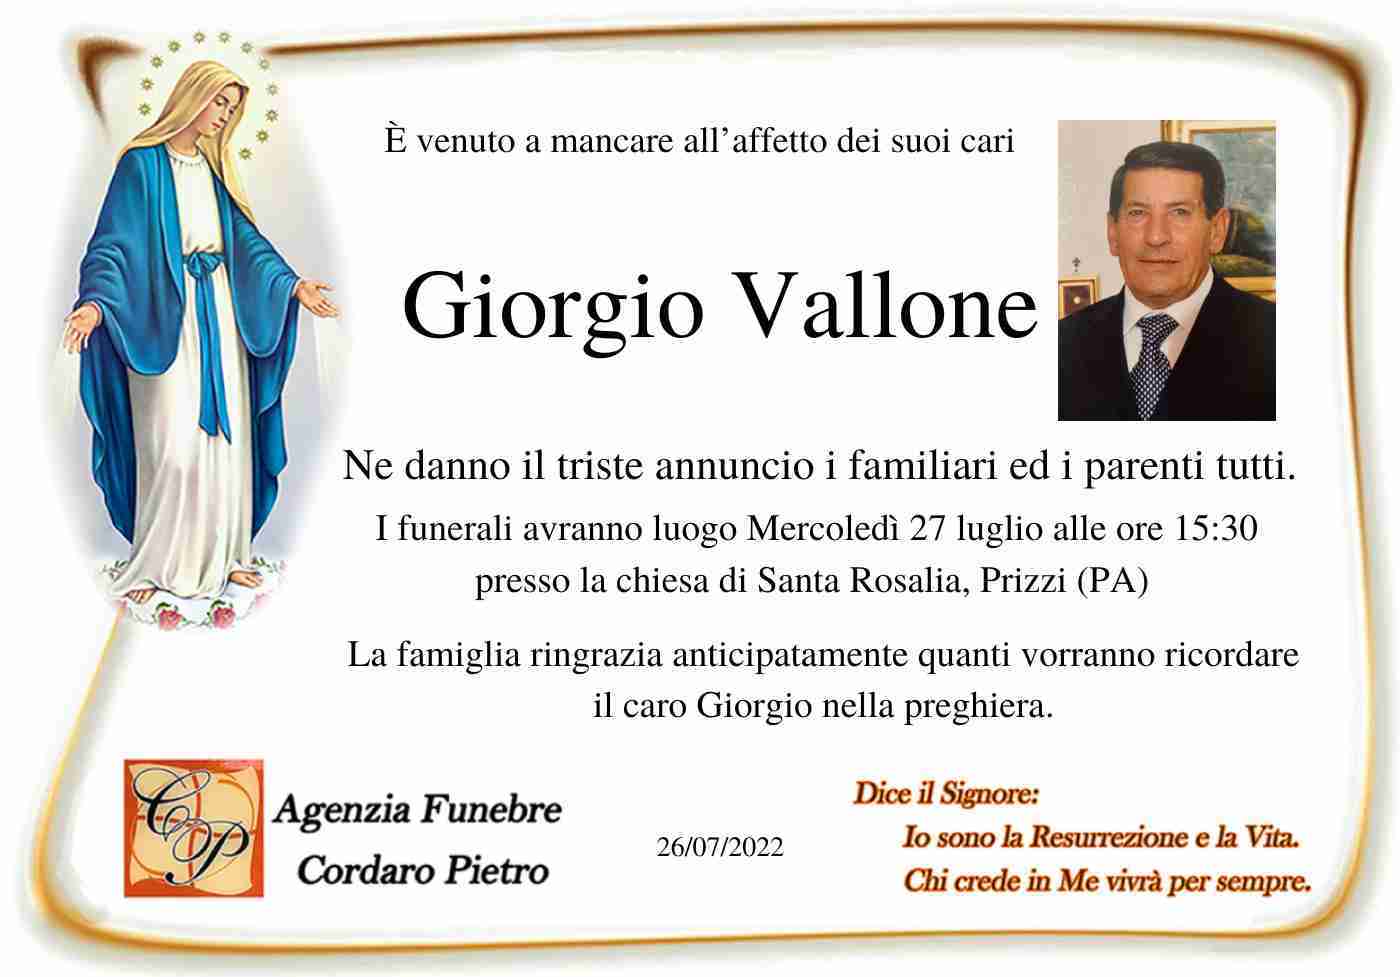 Giorgio Vallone